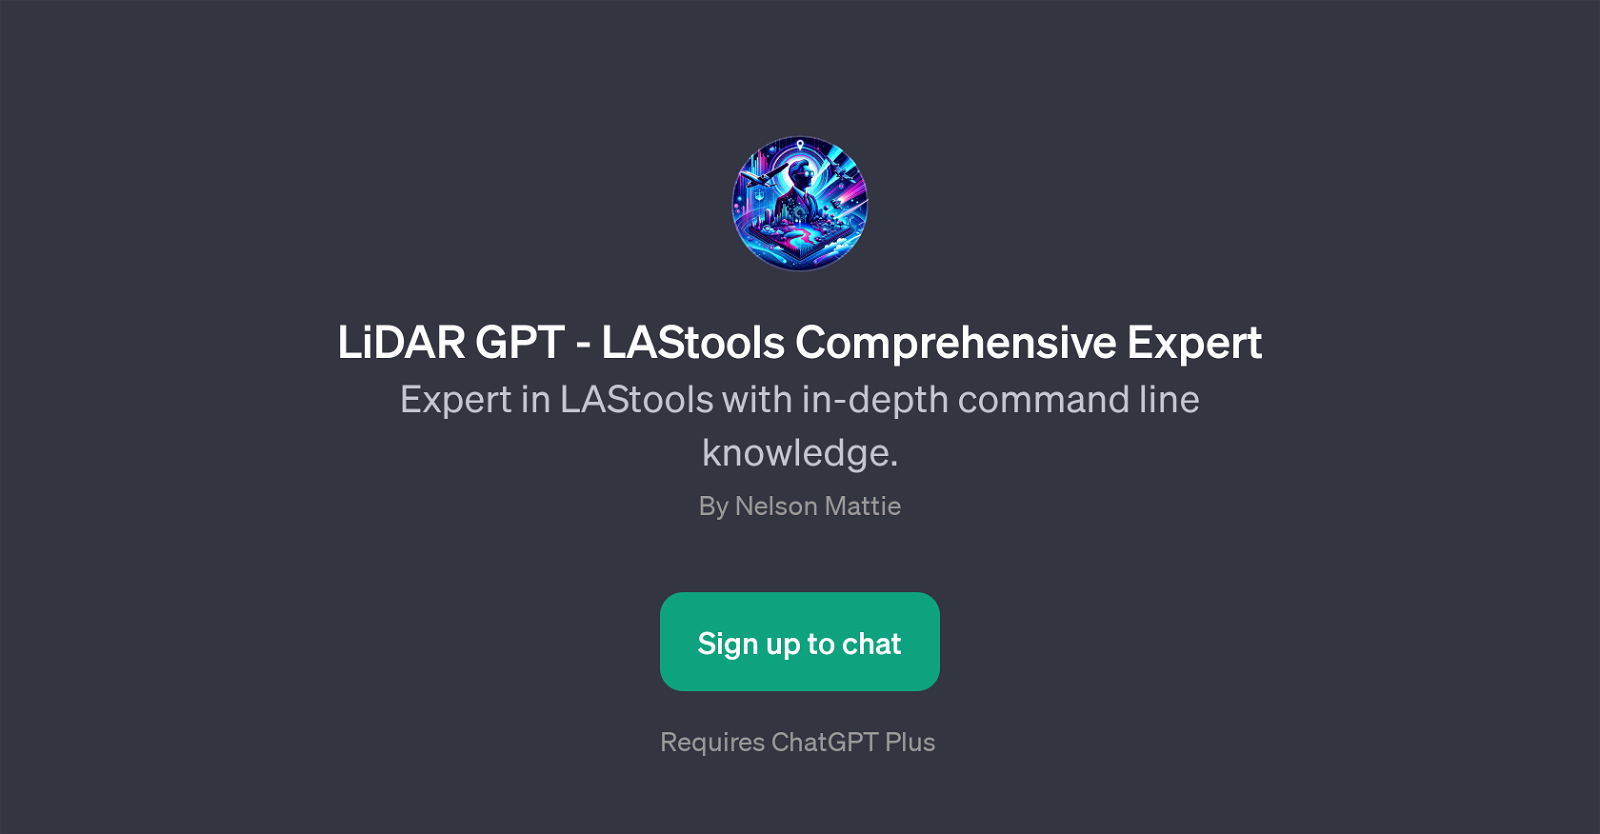 LiDAR GPT - LAStools Comprehensive Expert website